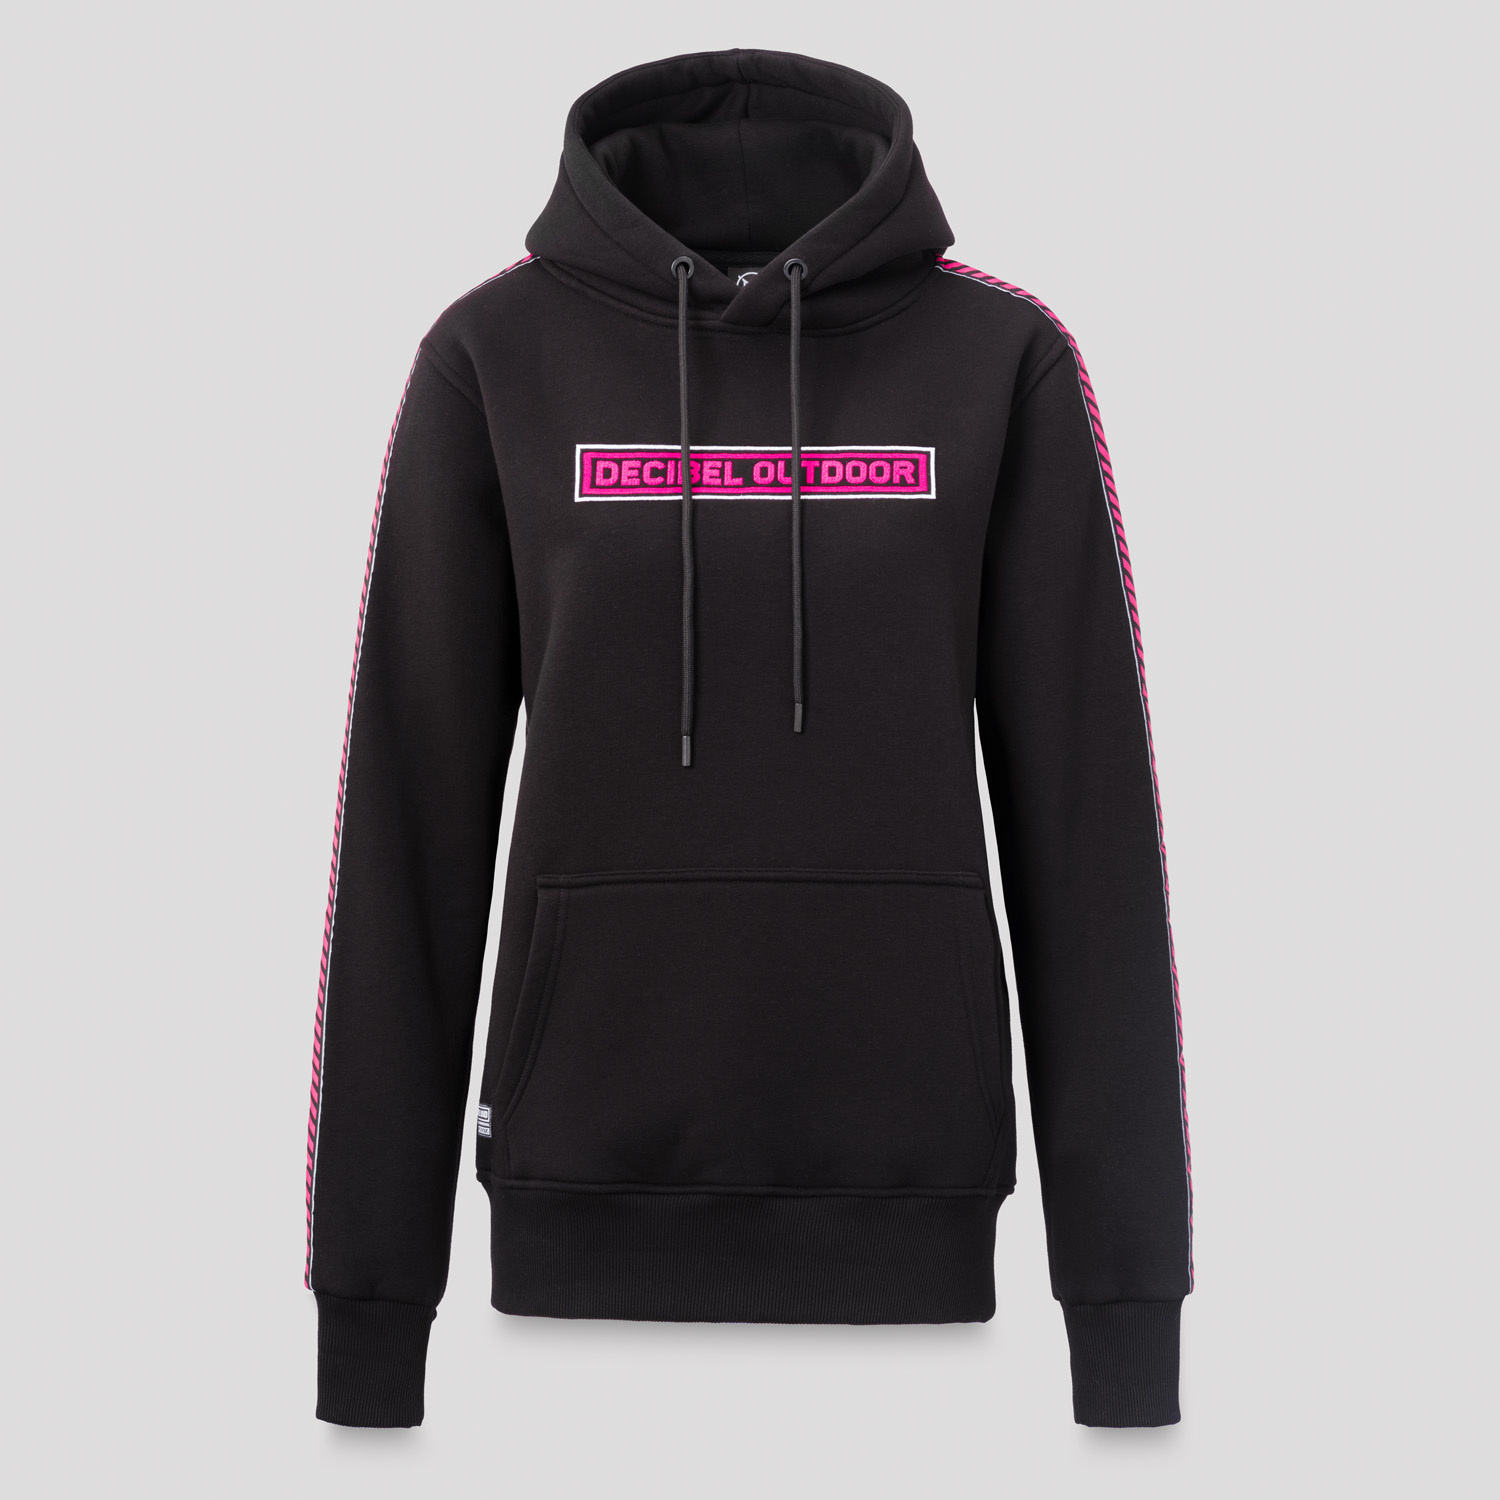 Decibel hoodie black/pink